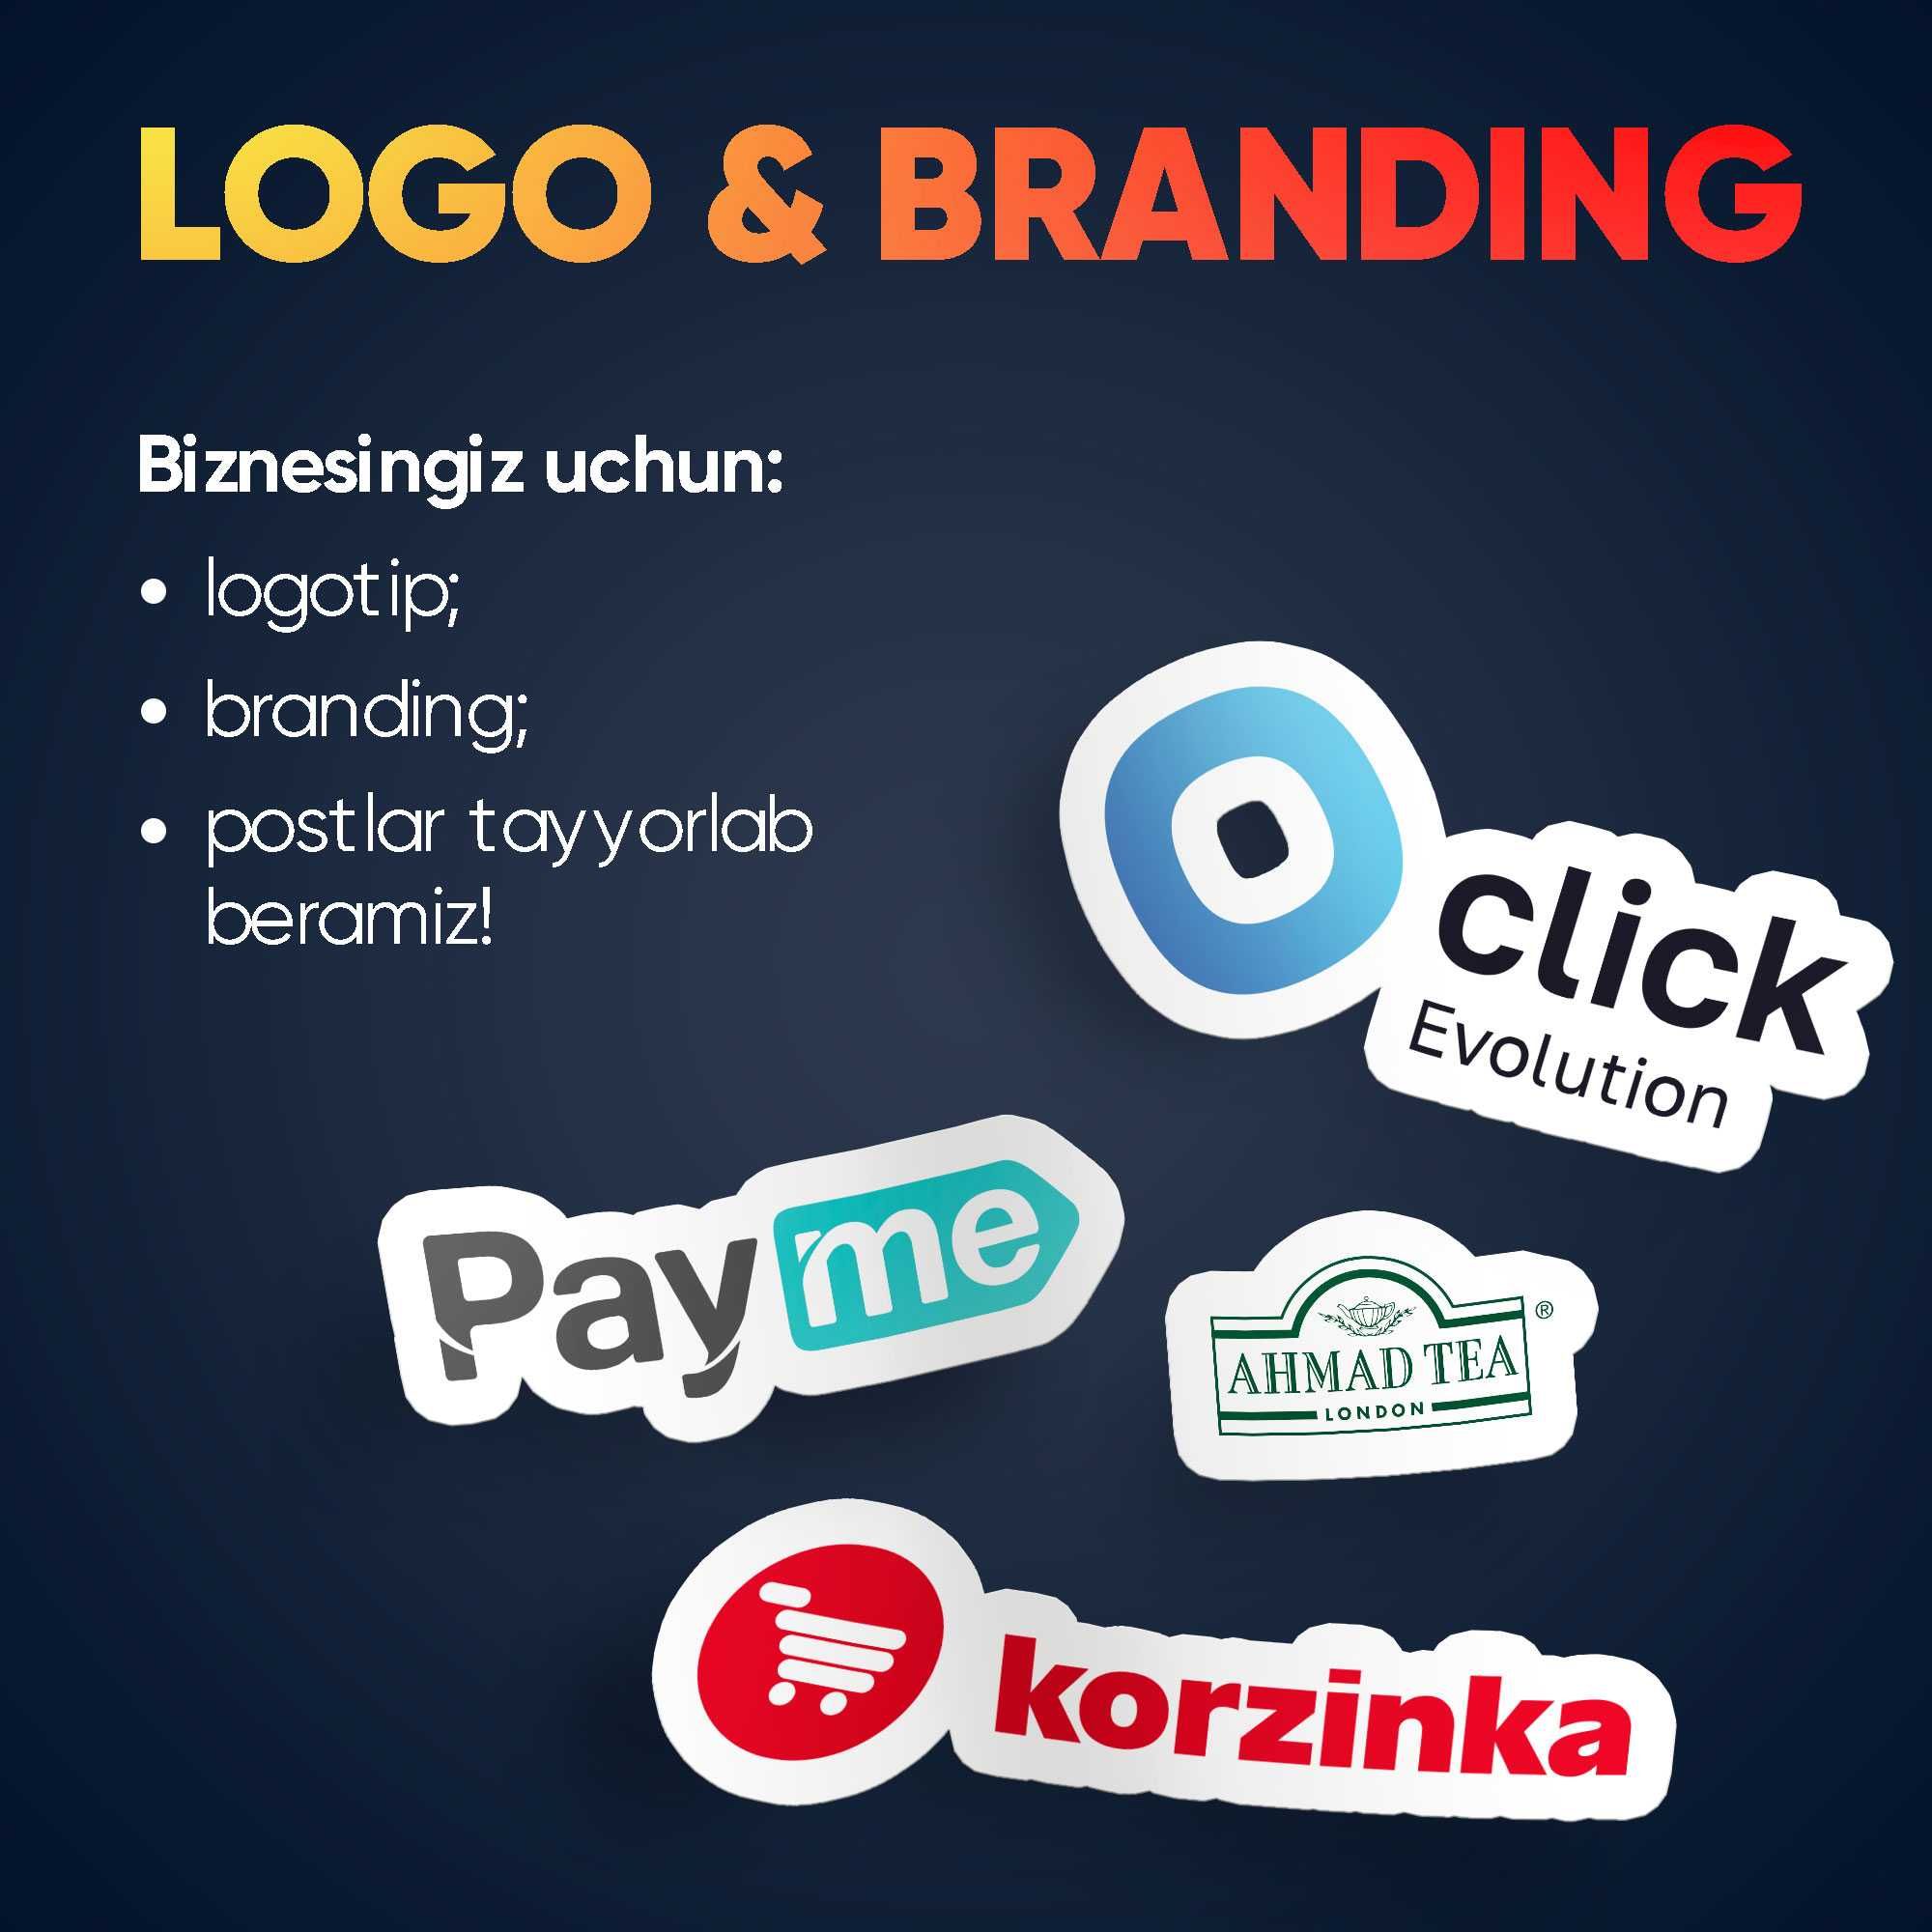 Logo & Branding xizmati